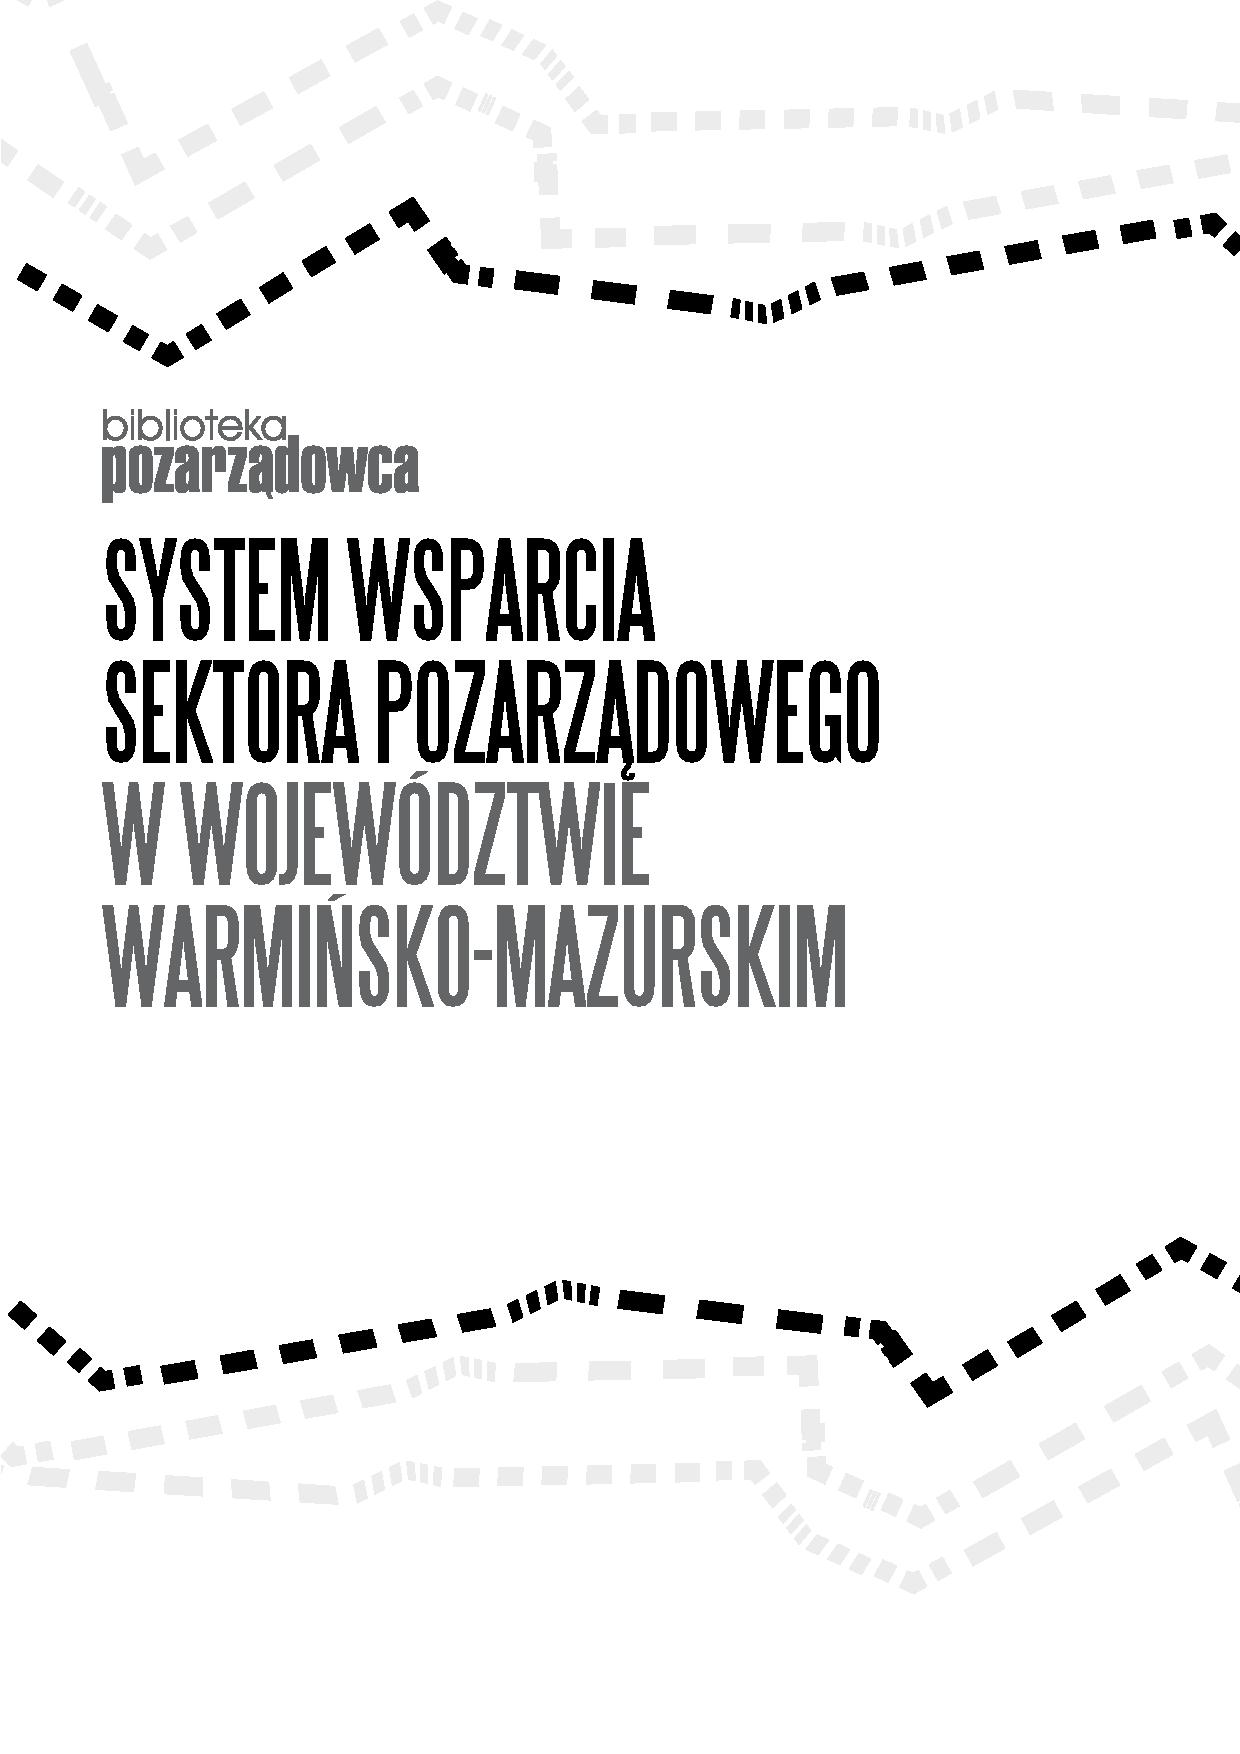 System wsparcia sektora pozarządowego w województwie warmińsko-mazurskim